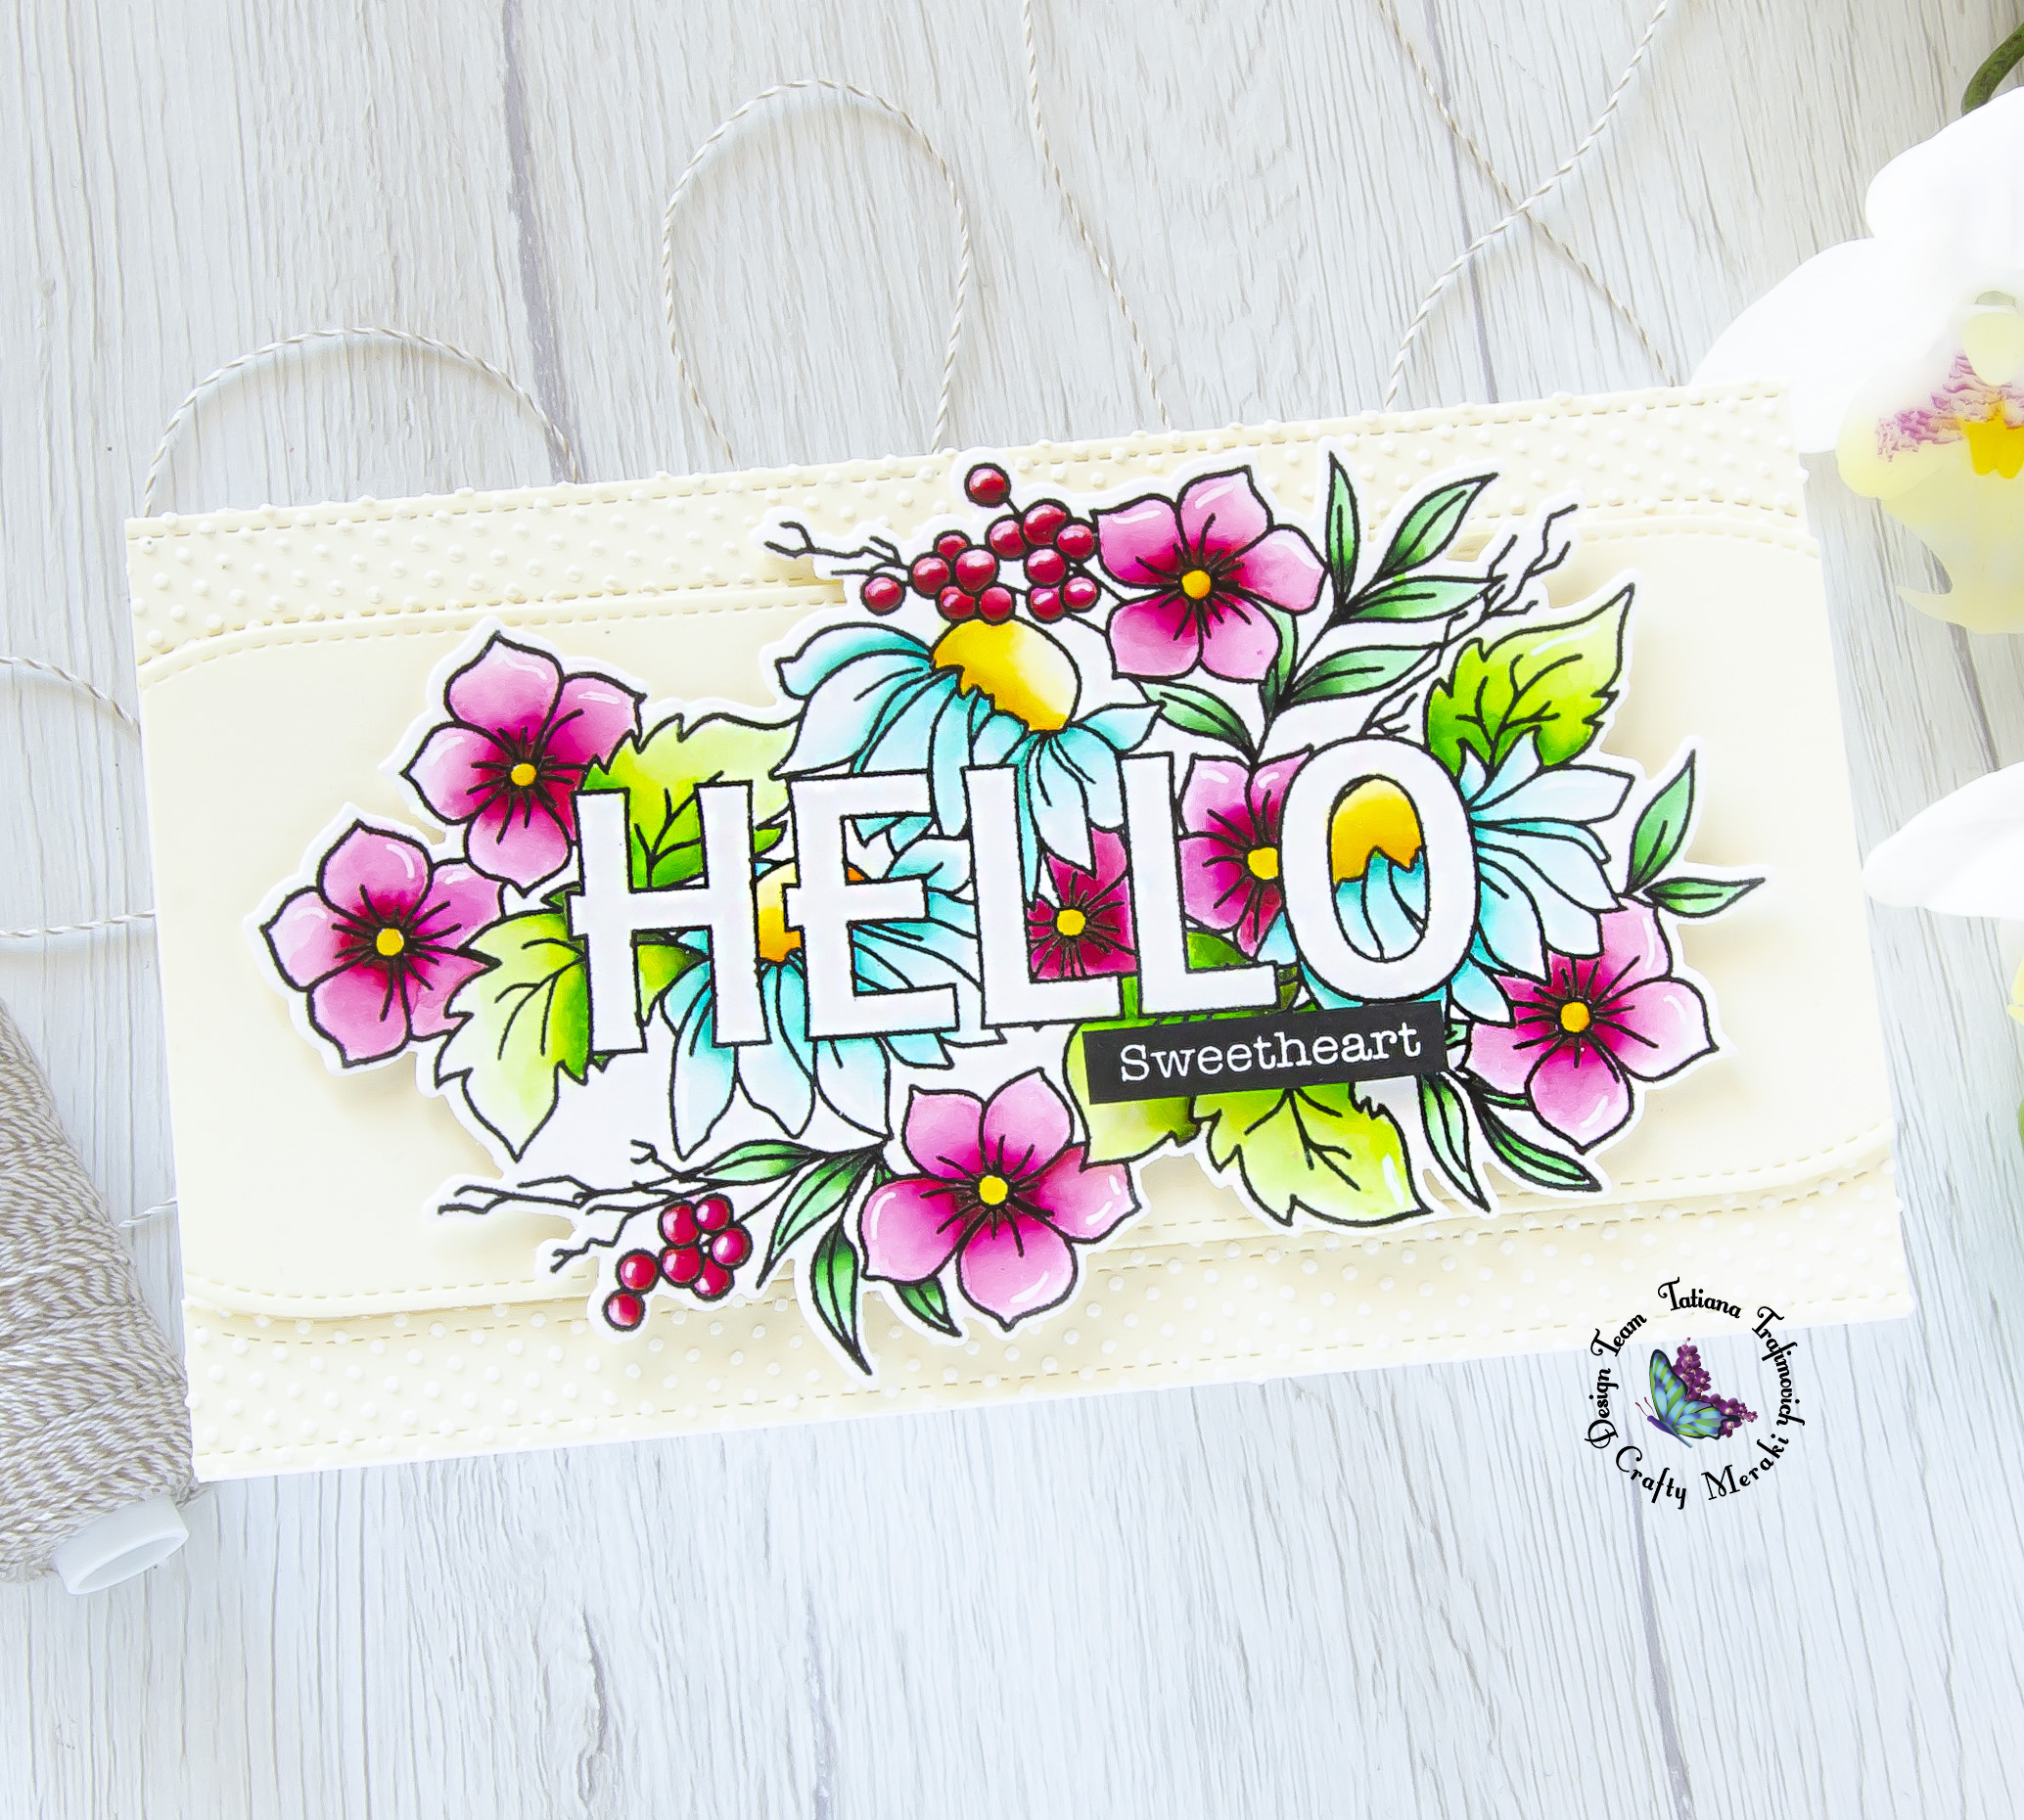 Hello Sweetheart #handmade card by Tatiana Trafimovich #tatianacraftandart - Hello Love stamp set by Crafty Meraki #craftymeraki